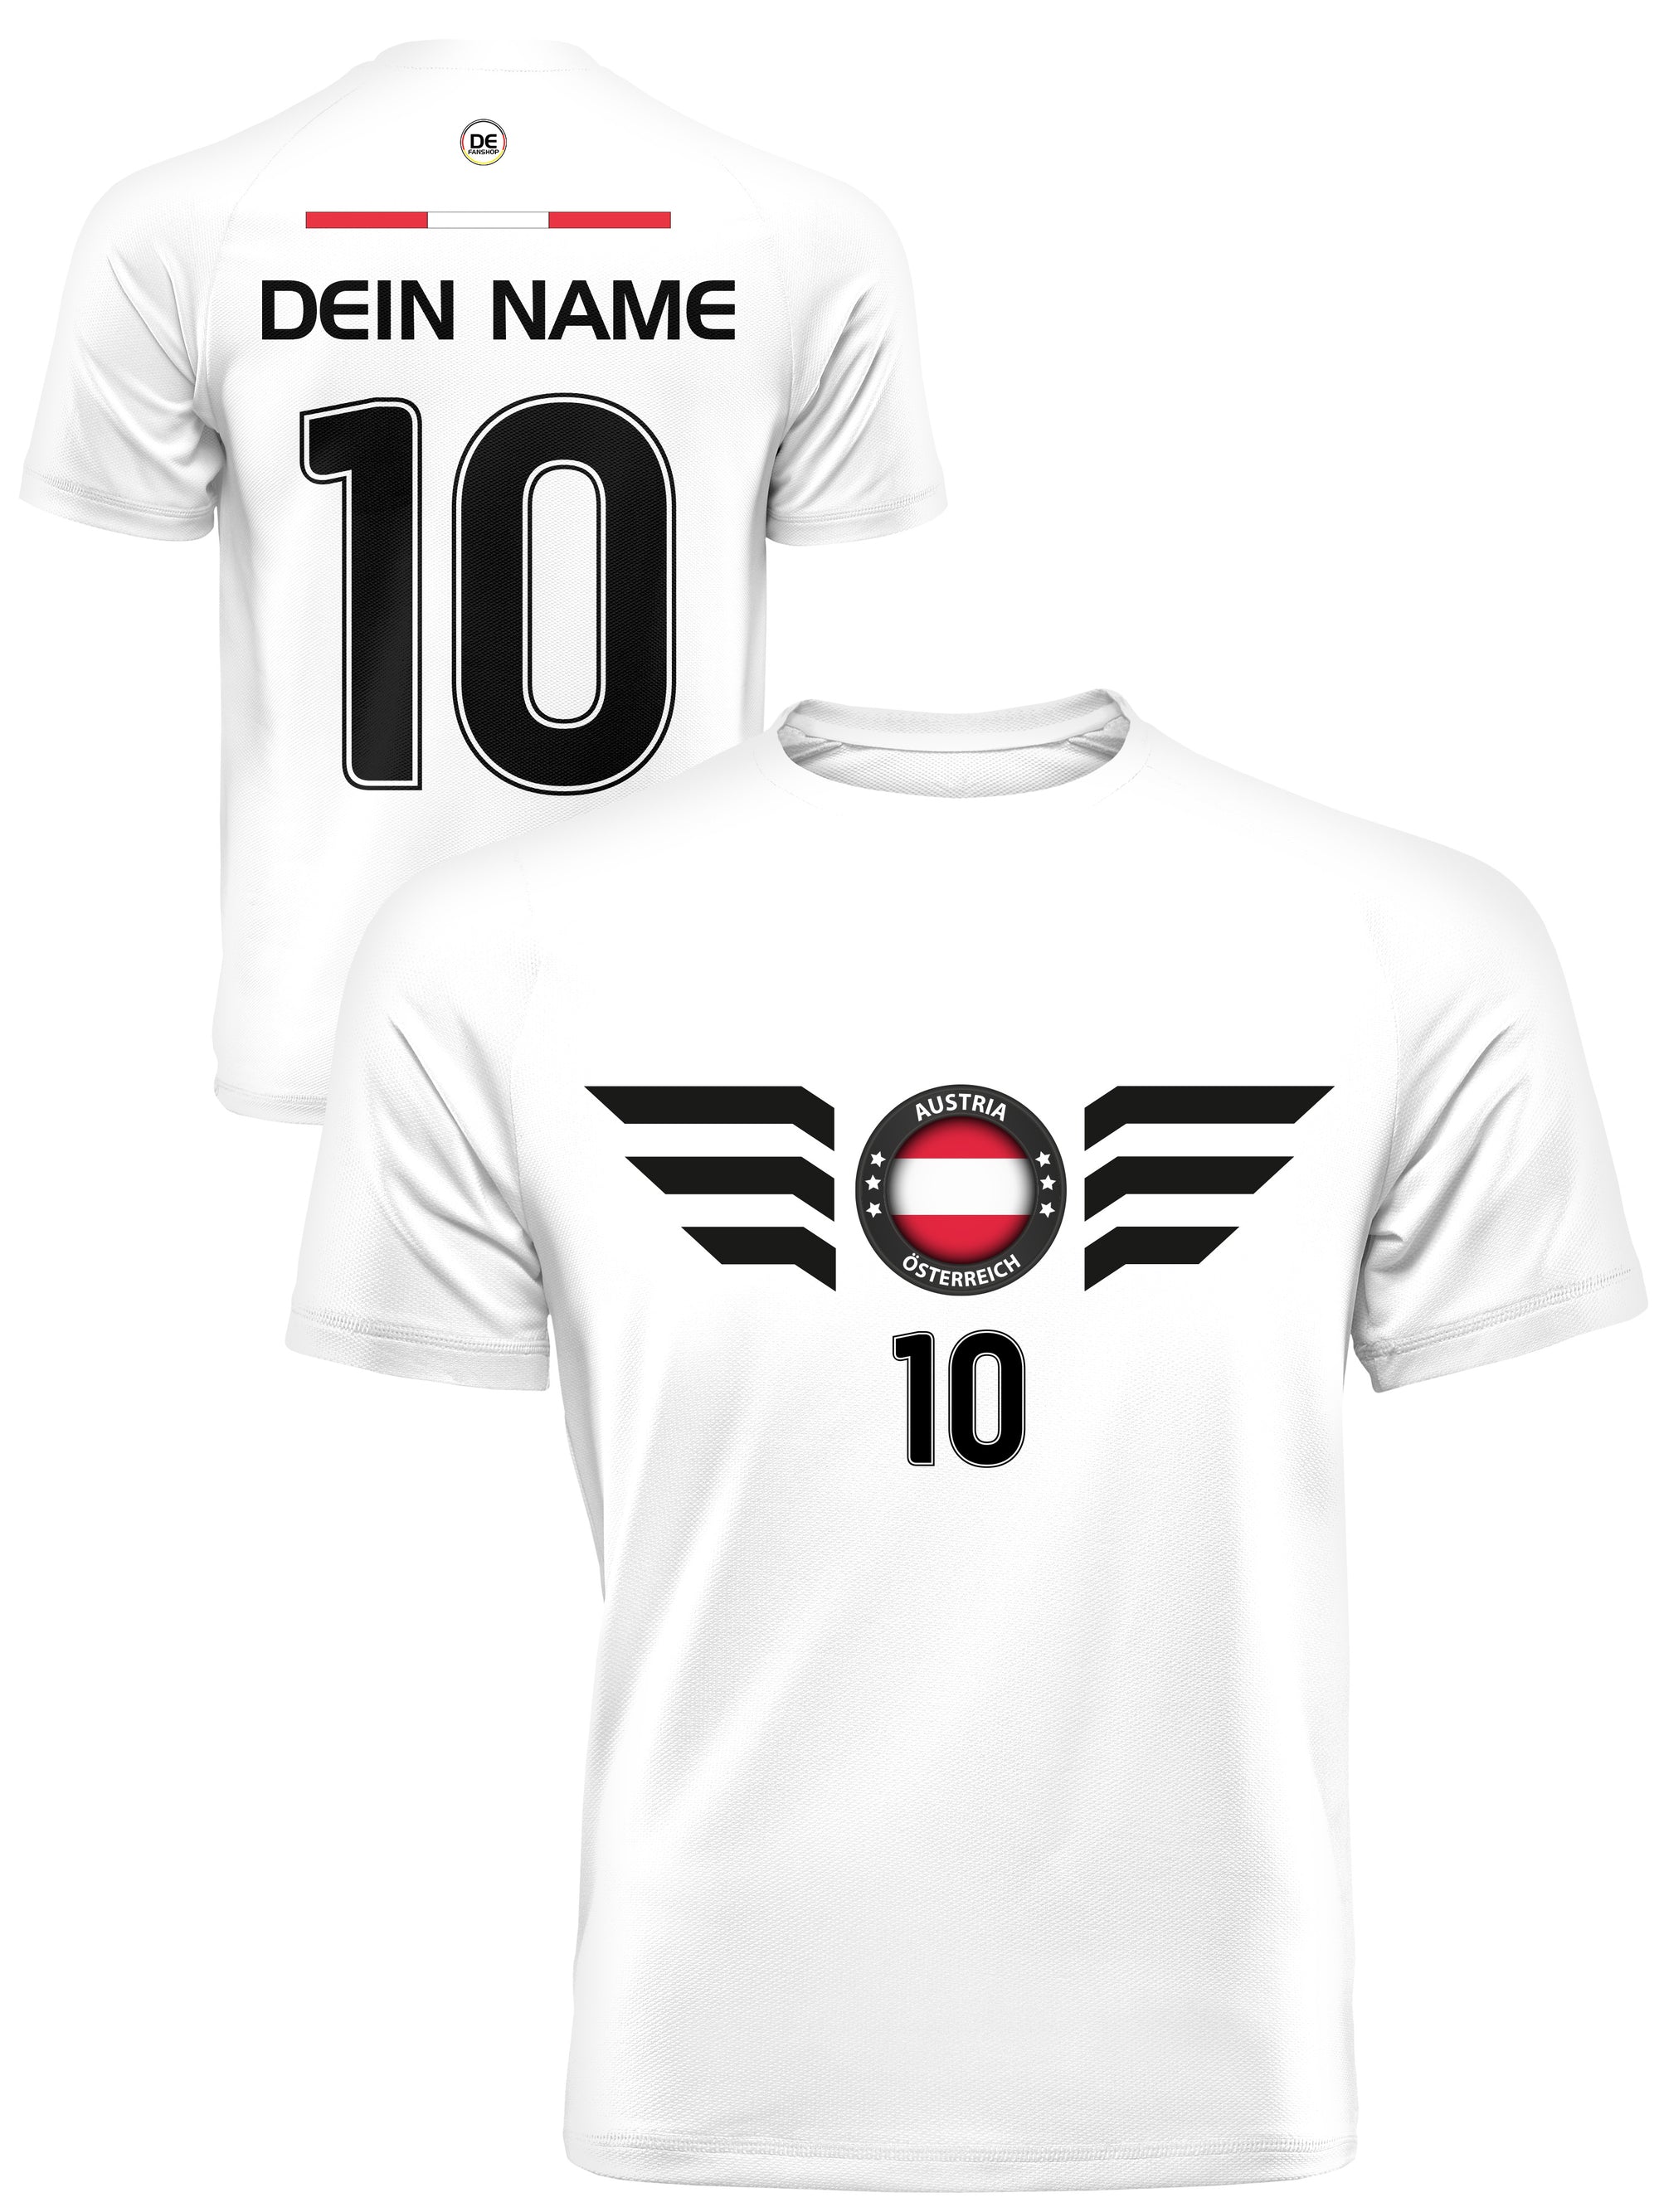 Österreich Fußball Trikot mit Dein Name